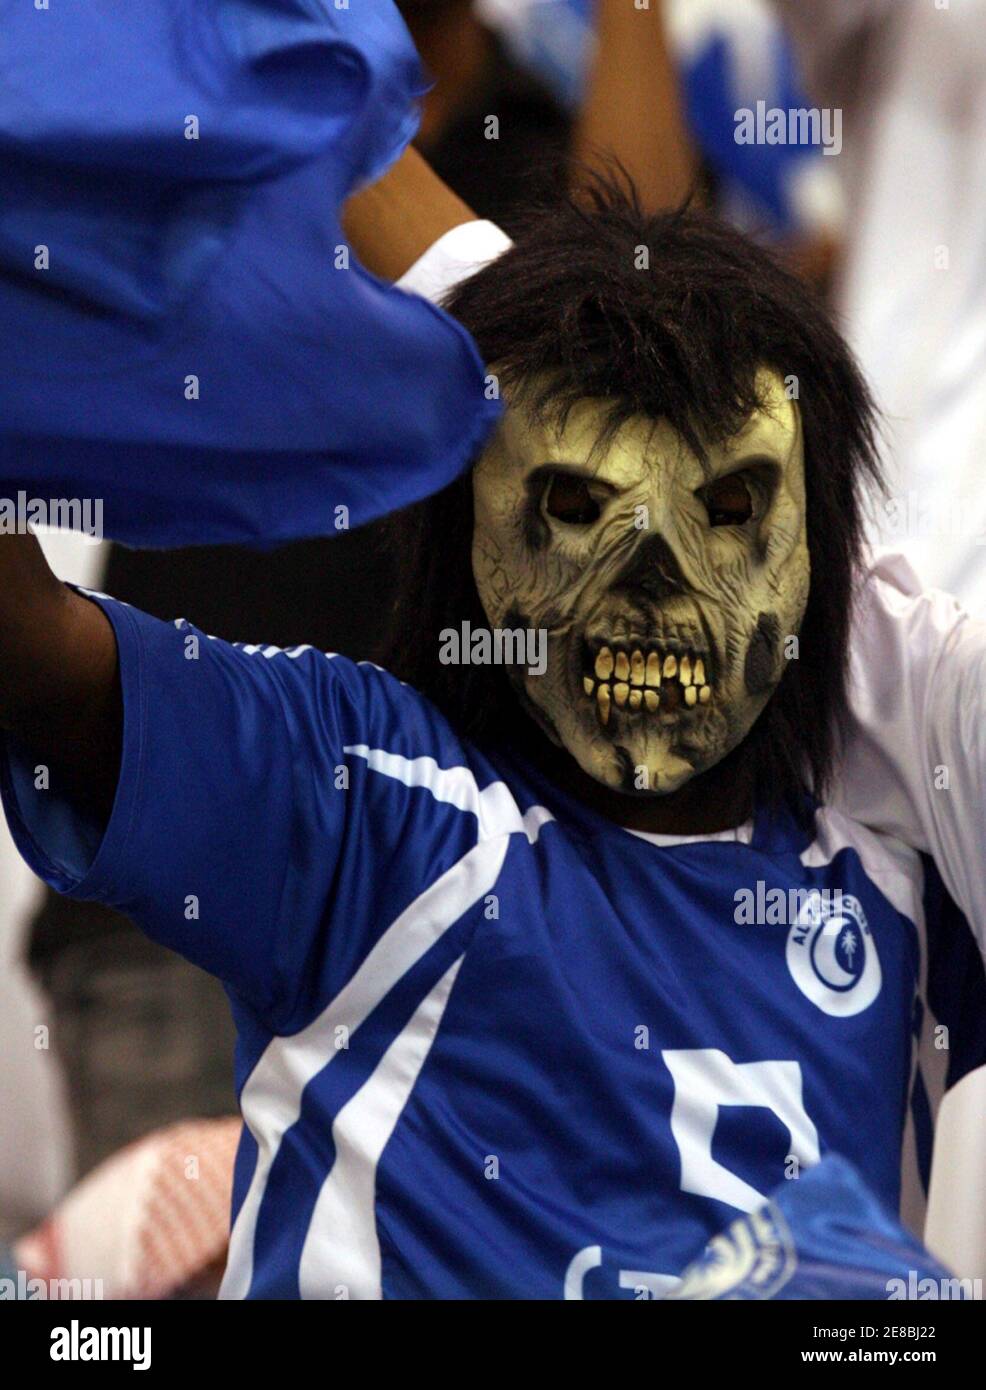 Un fan d'al-Hilal applaudit son équipe lors de son match contre al-Nasr lors du dernier match de football de la coupe du Prince saoudien Faisal Bin Fahad à Riyad le 2 avril 2008. REUTERS/Fahad Shadeed (ARABIE SAOUDITE) Banque D'Images